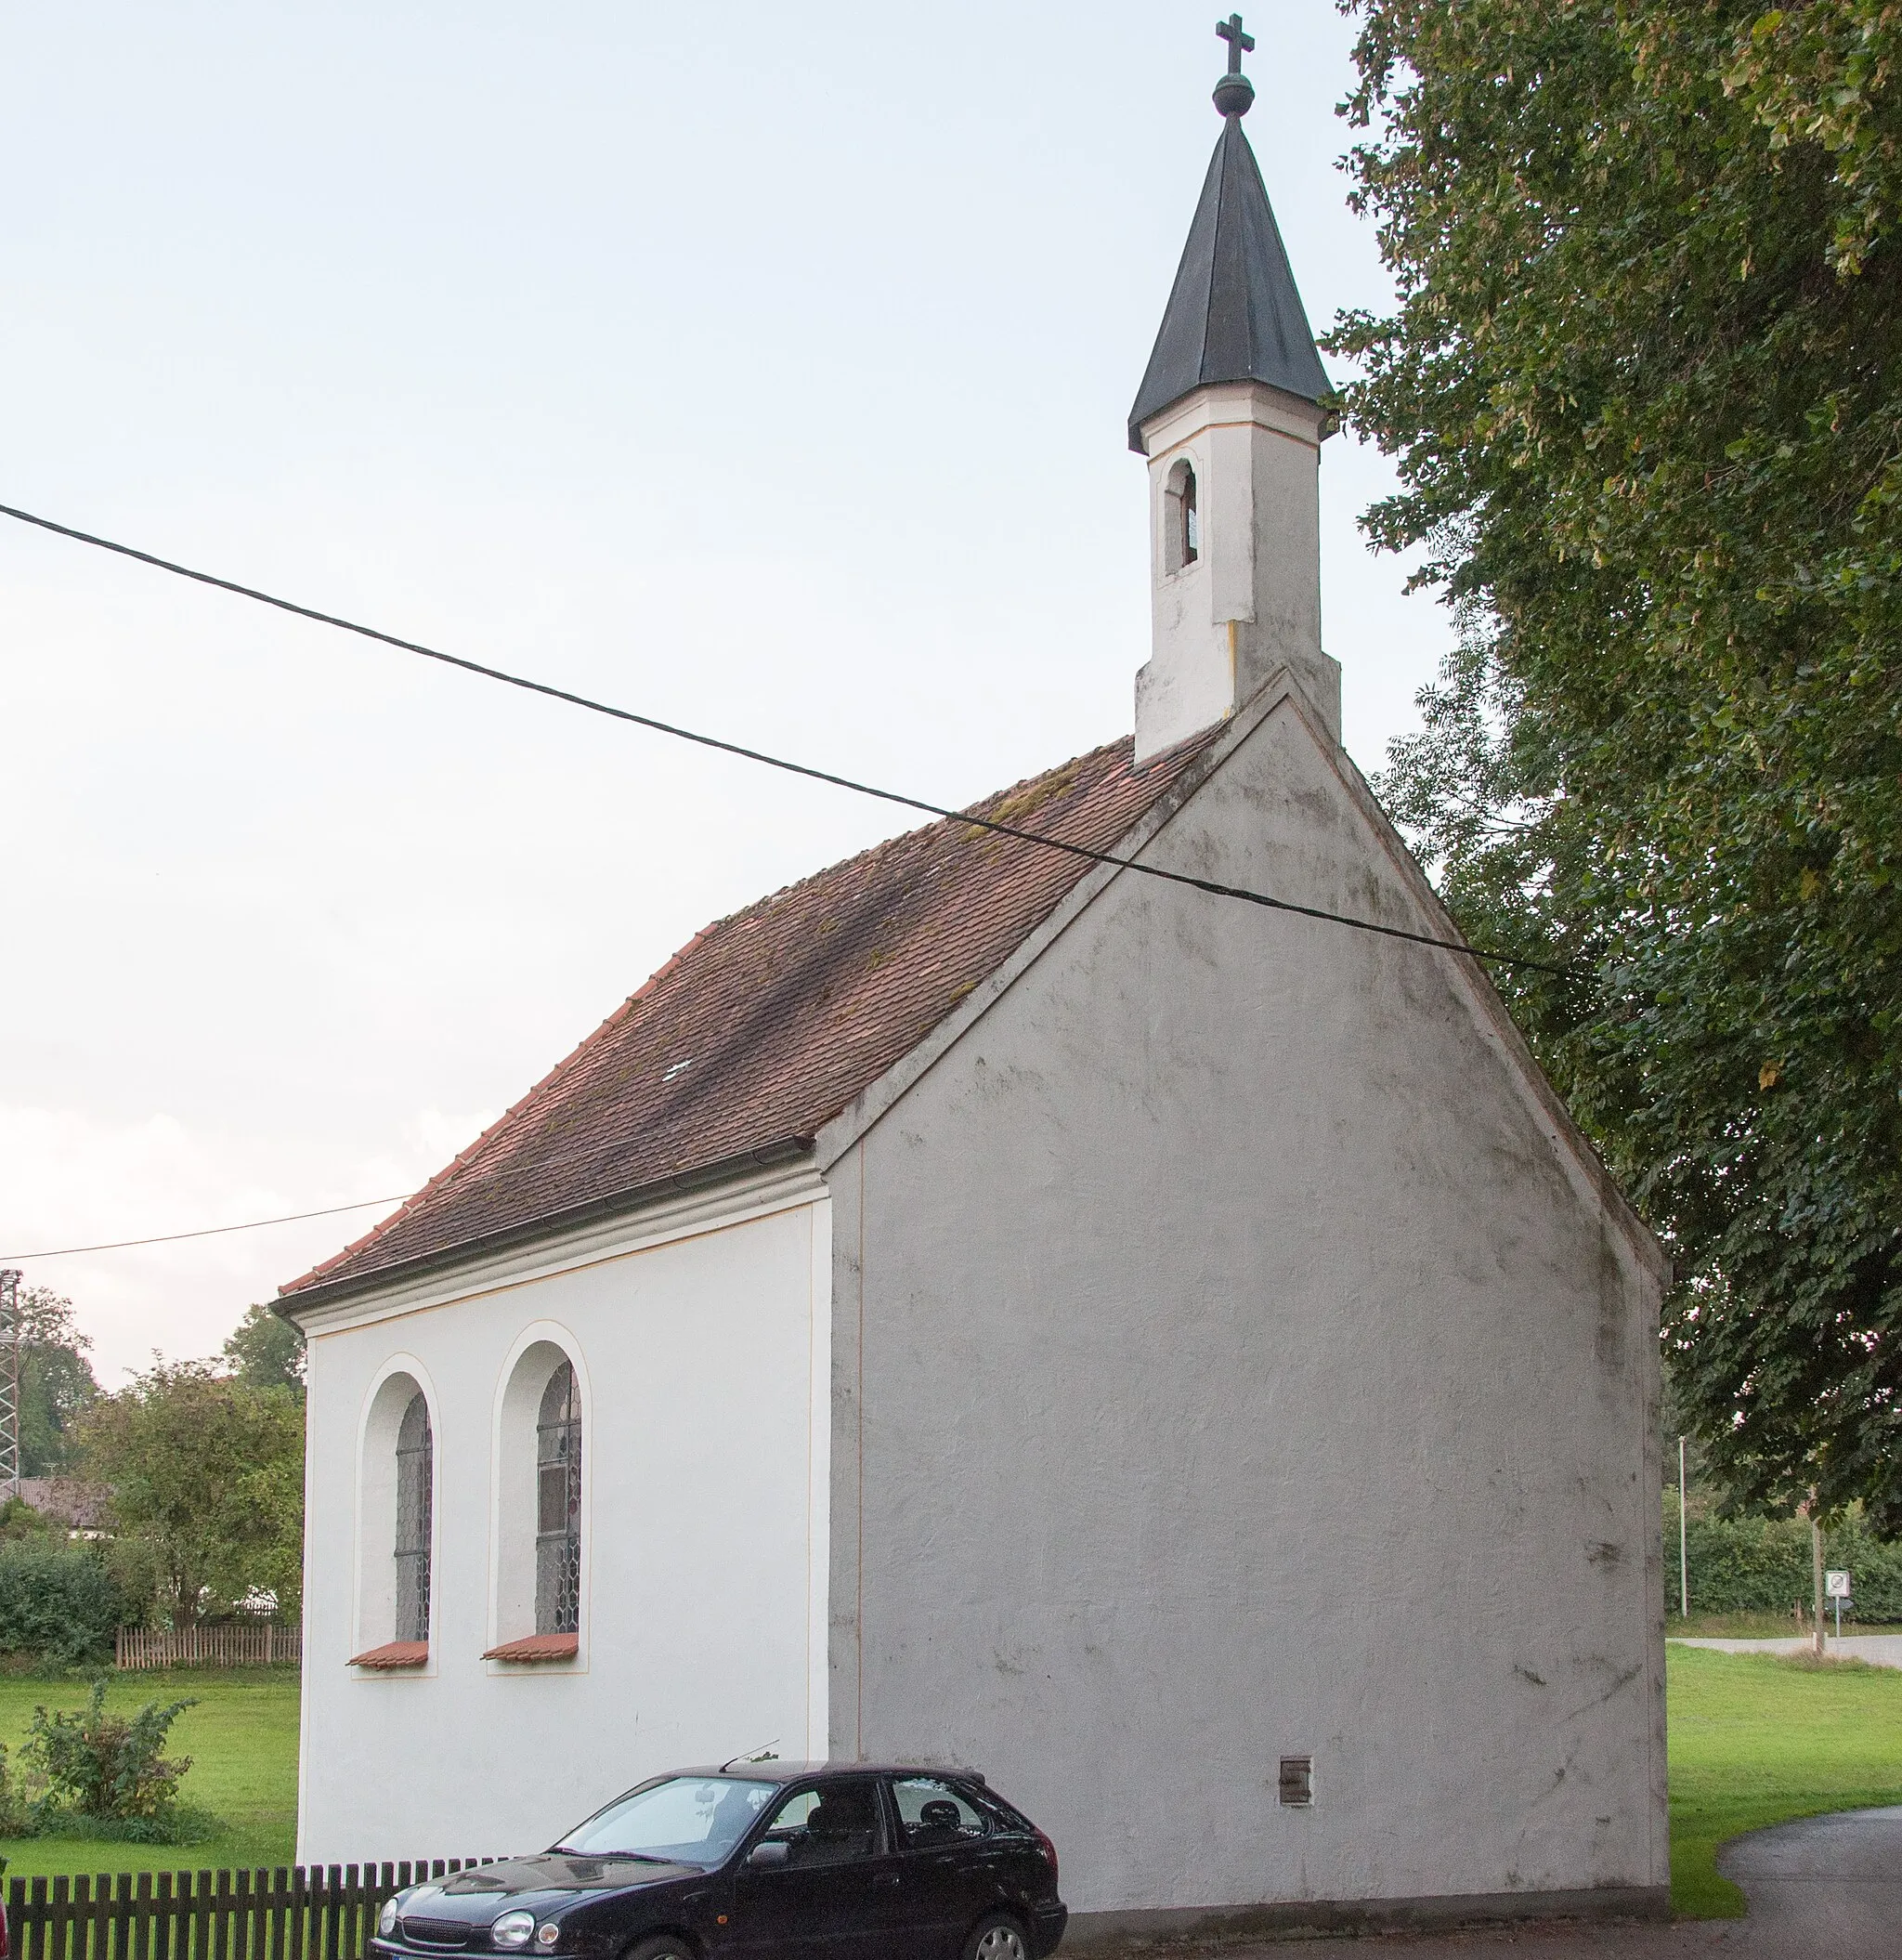 Photo showing: Kapelle, sog. Haldenkapelle, einschiffiger Satteldachbau mit kleinem Turm, 1816 Neubau nach Vorbild der alten Haldenkapelle (1739/40) an anderem Standort.